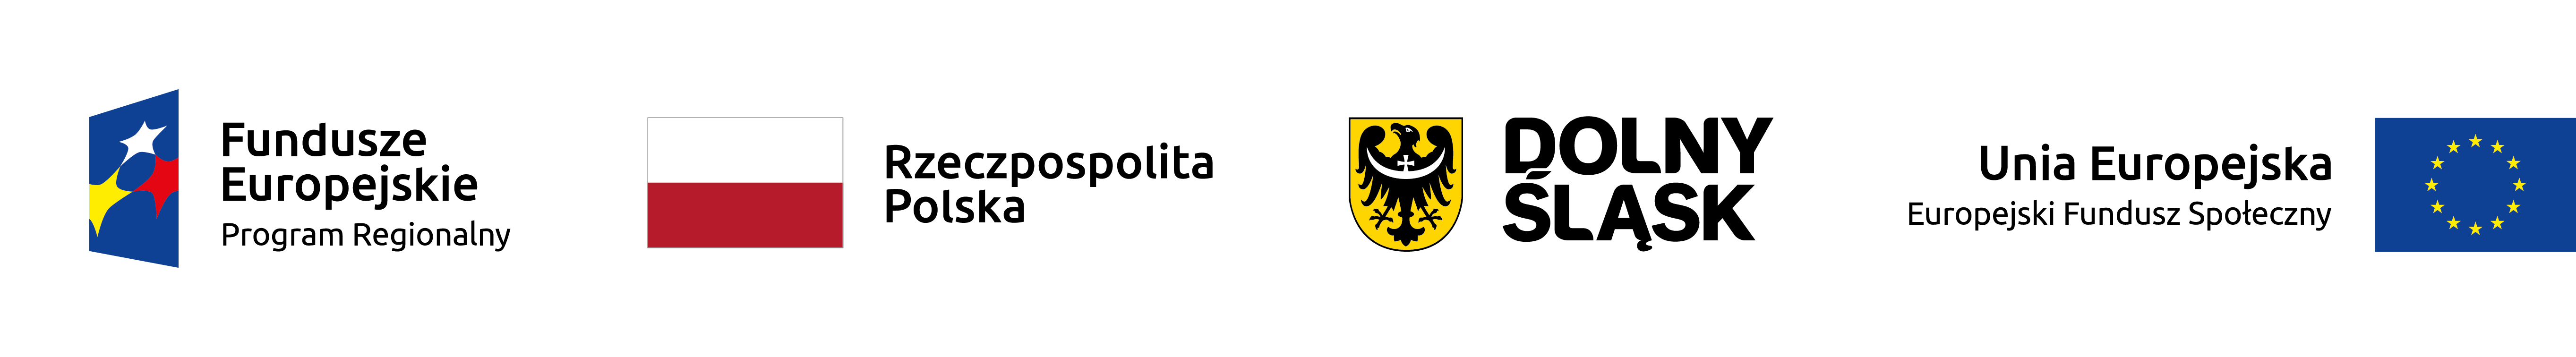 logo funduszy unijnych, flaga Polsk, herb Dolnegpo Śląska oraz falga UE